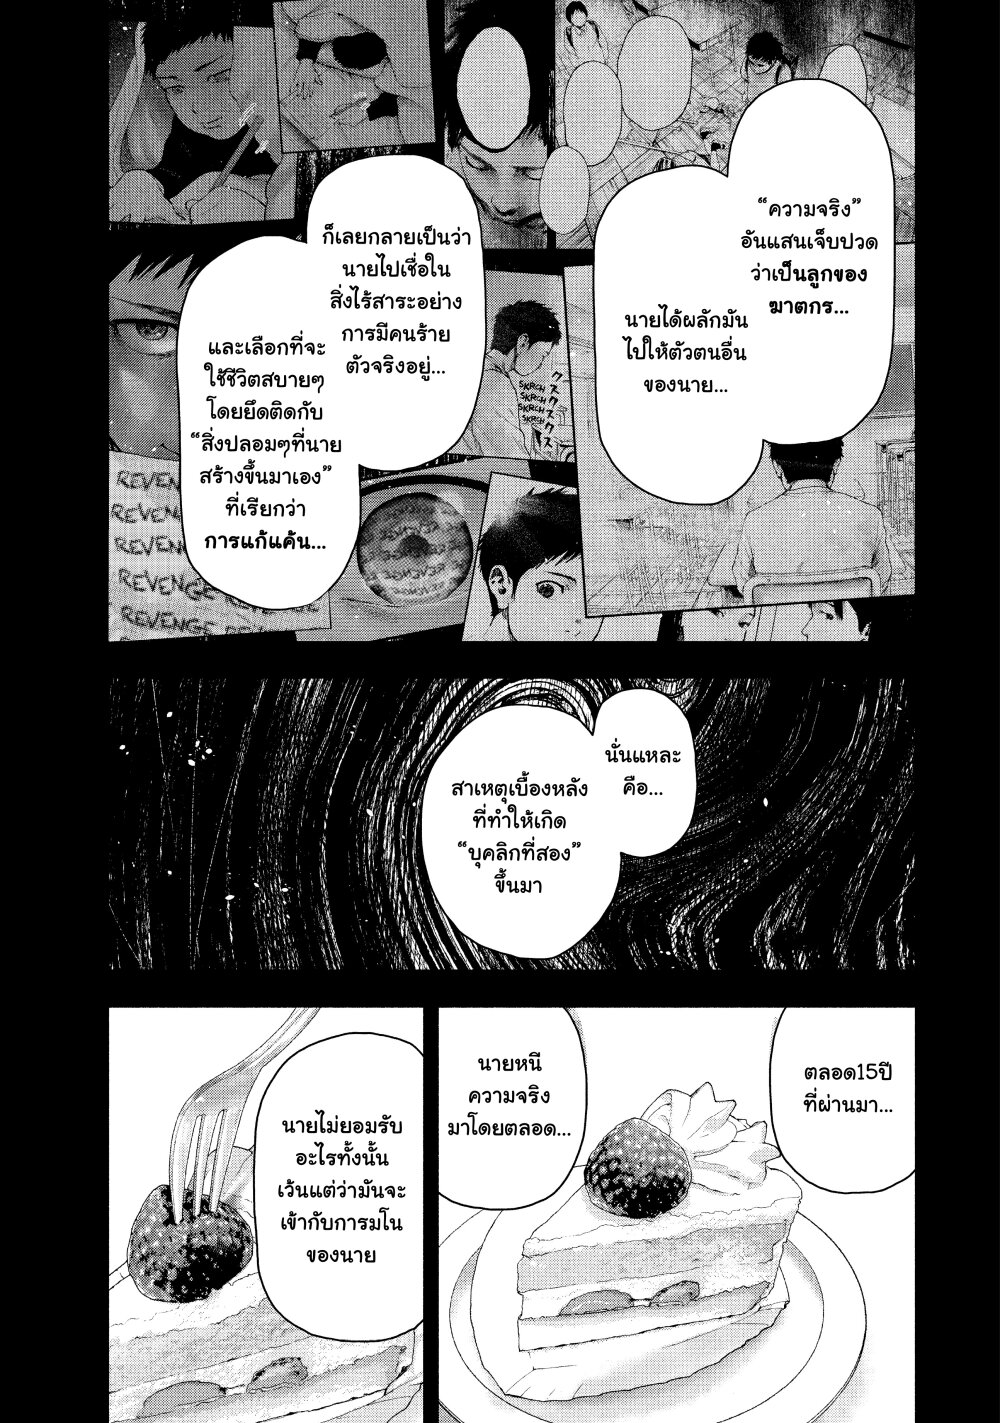 Shin’ai naru Boku e Satsui o Komete 56 (11)